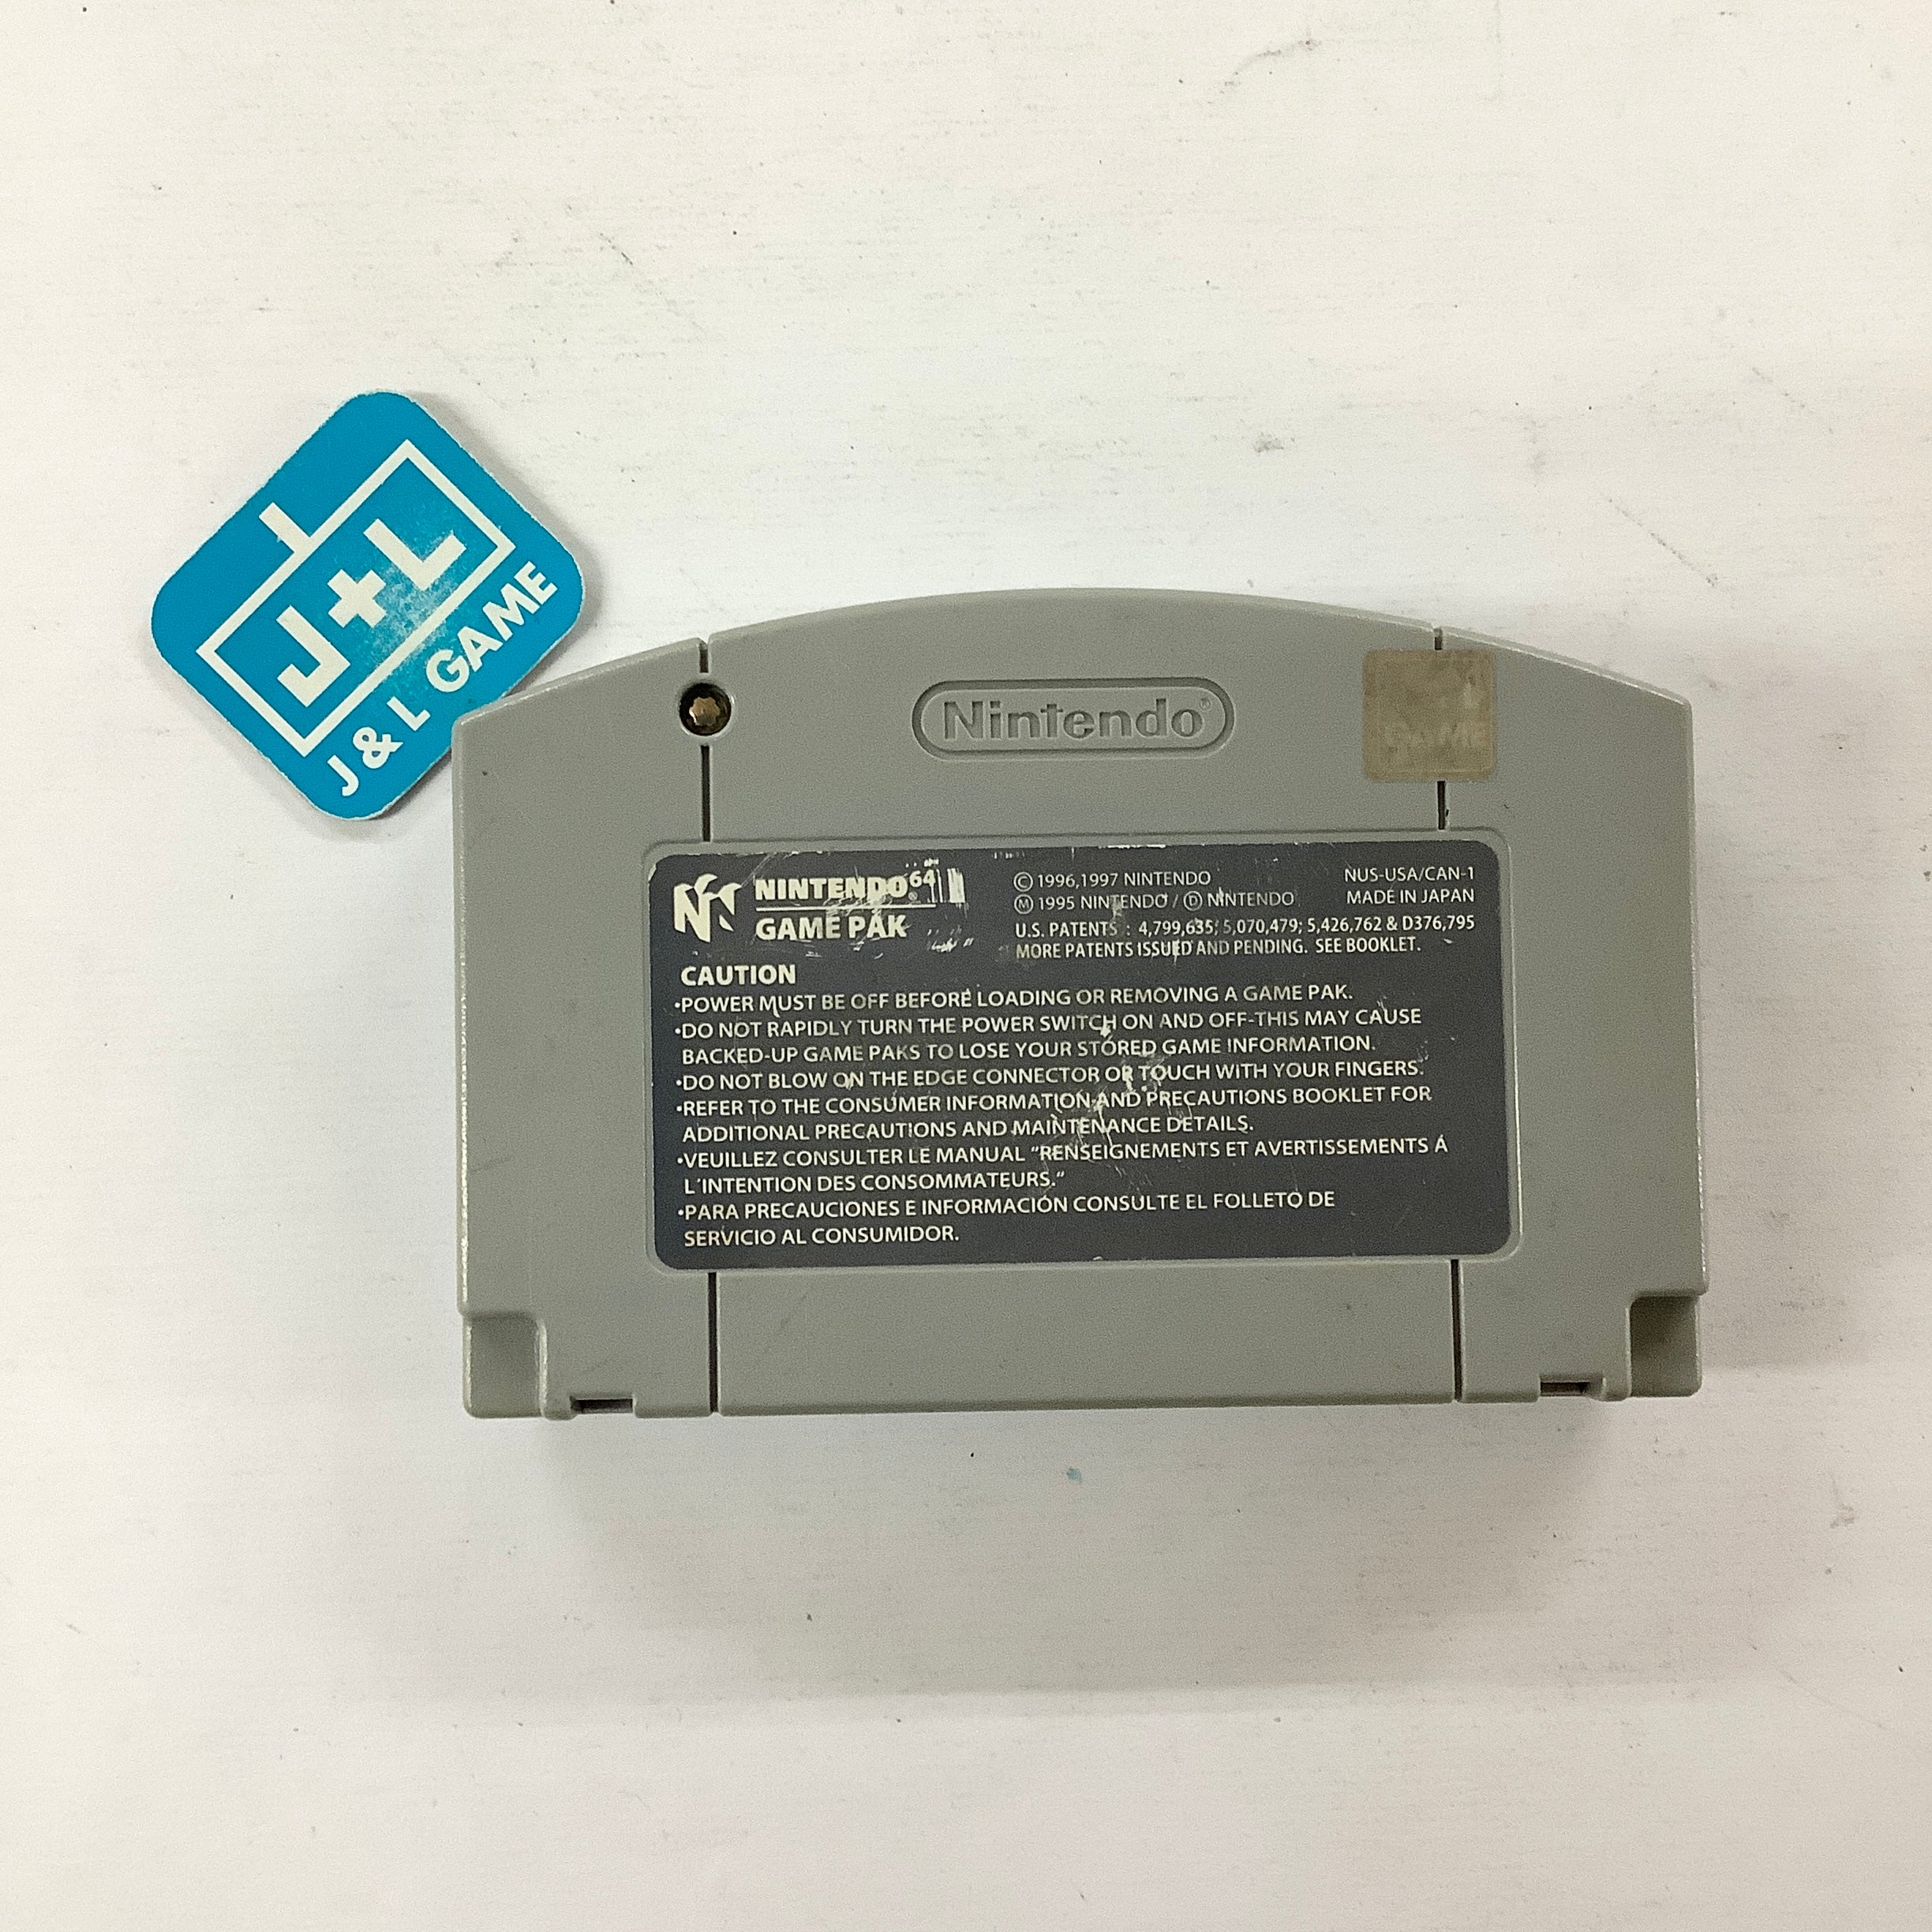 Triple Play 2000 - (N64) Nintendo 64 [Pre-Owned] Video Games EA Sports   